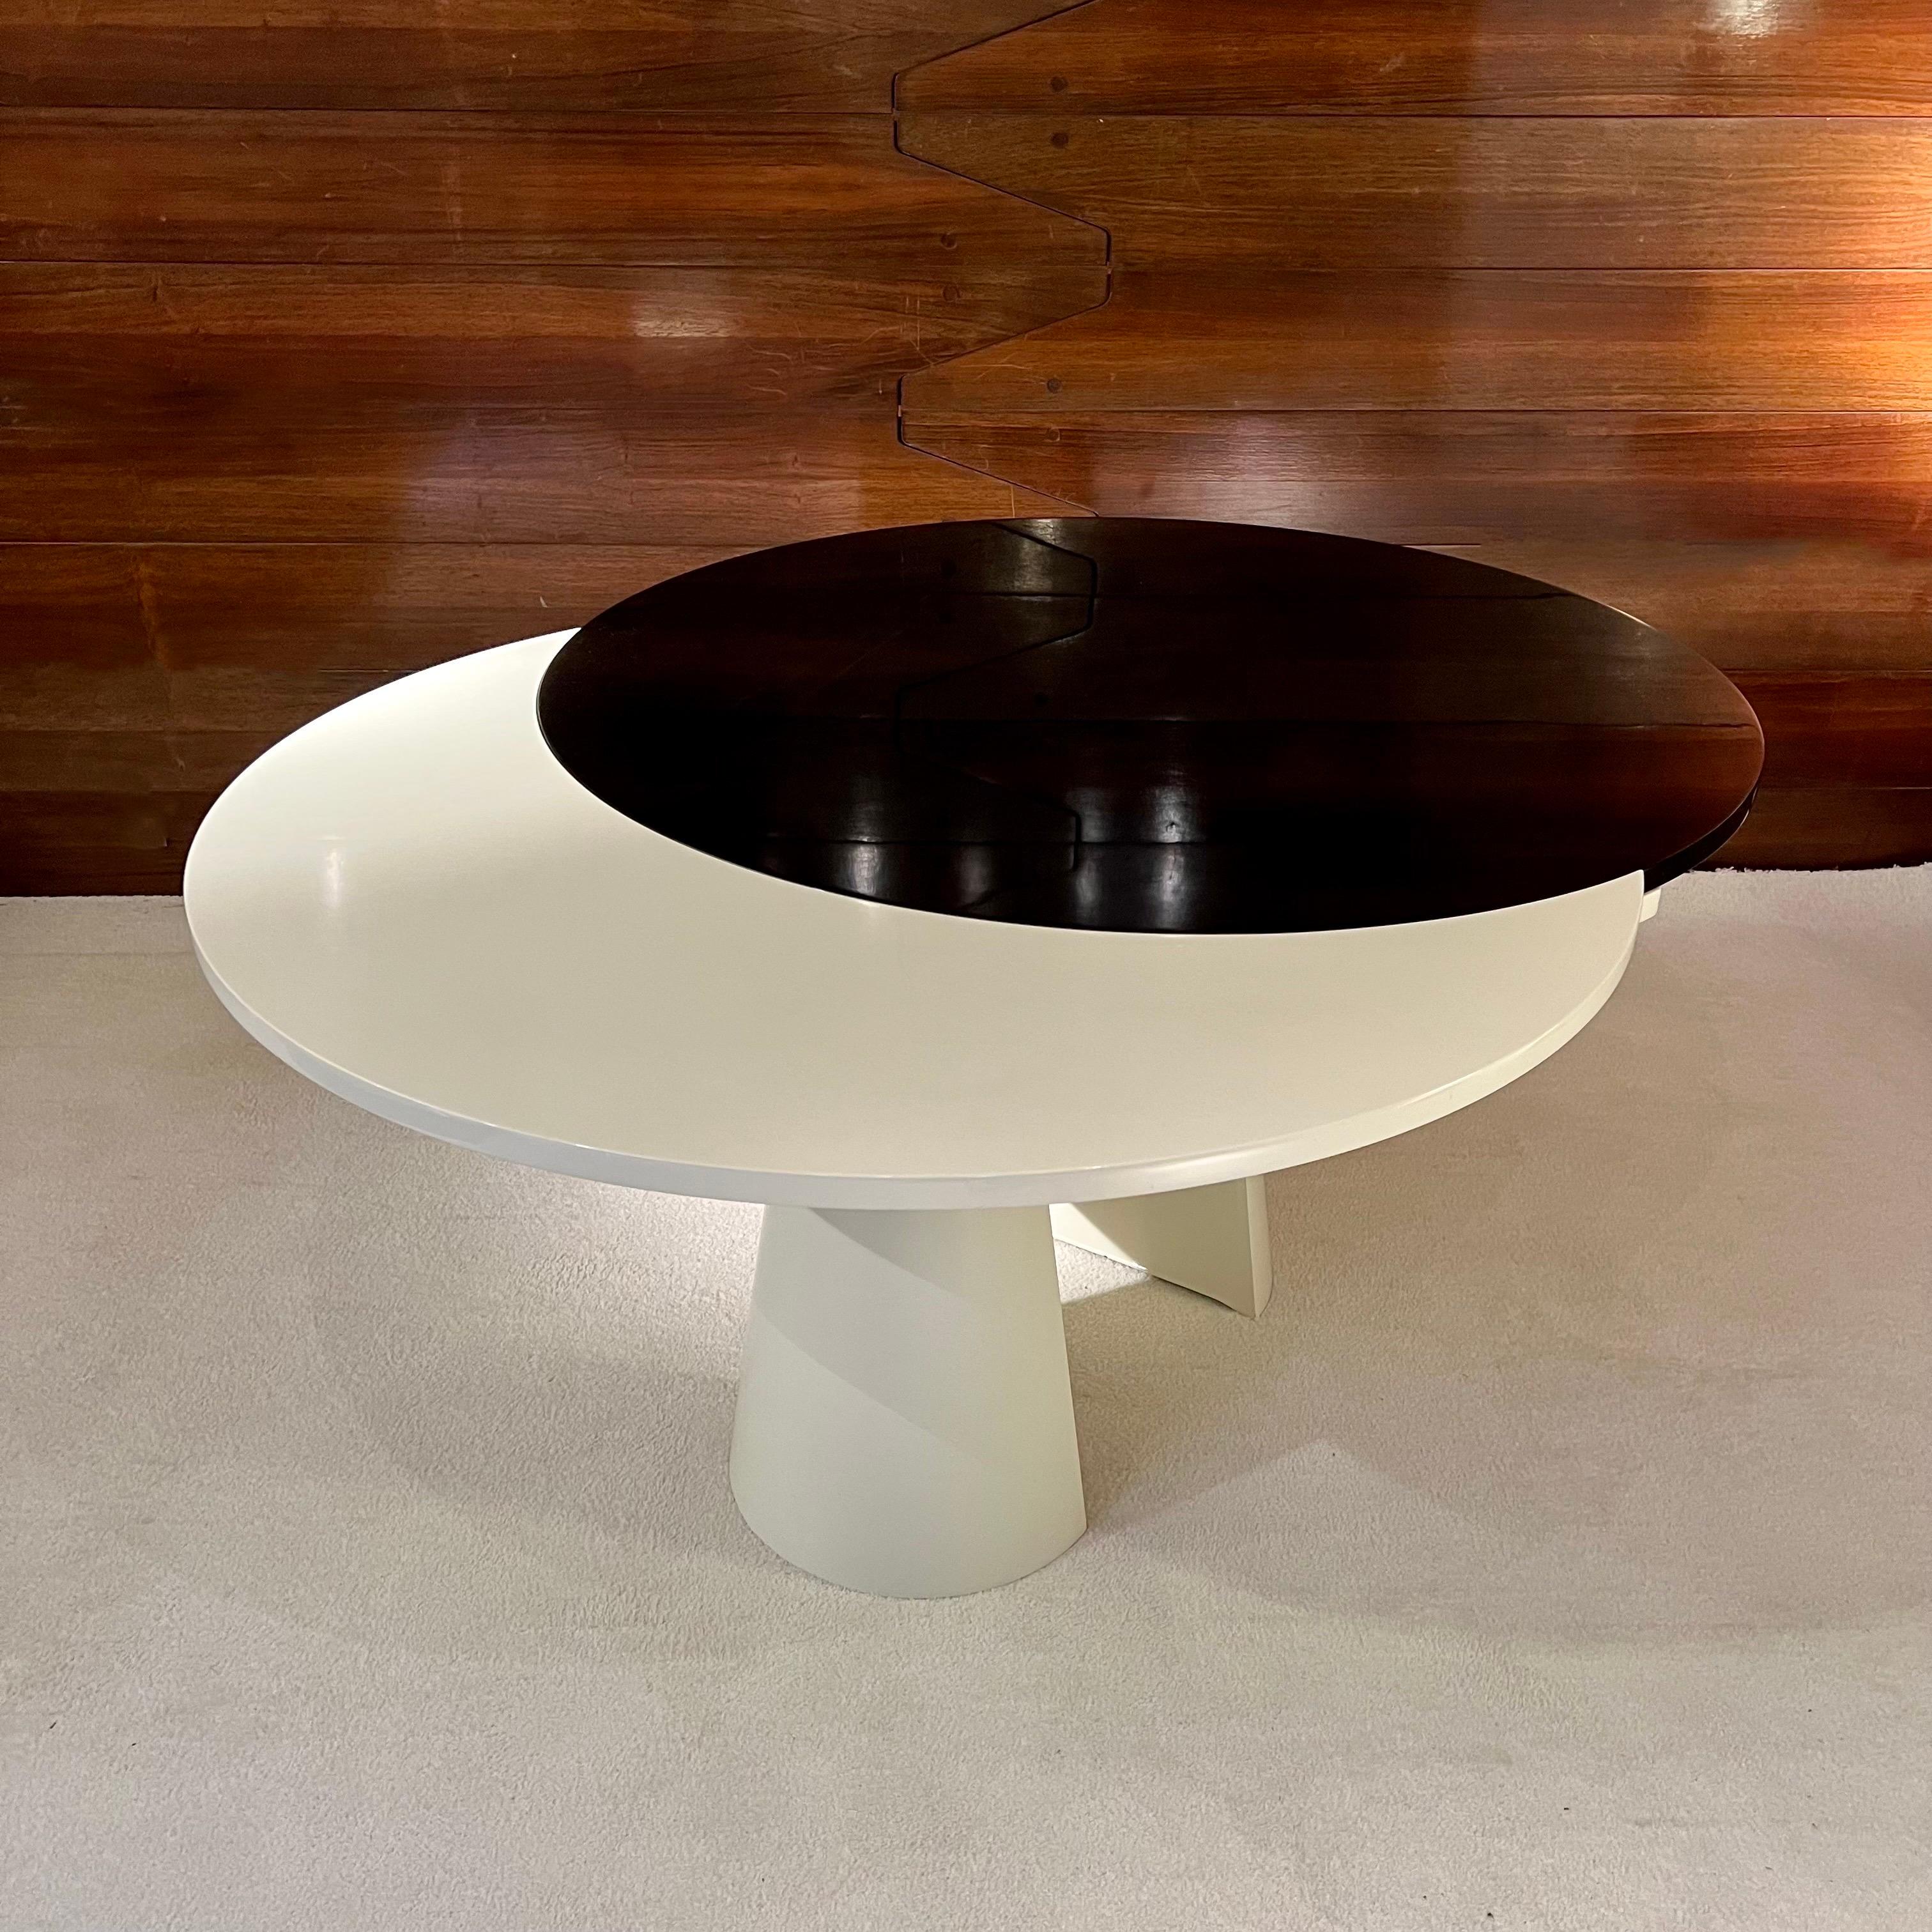 Cette superbe table, fabriquée en France dans les années 80, présente deux plateaux laqués, noir et blanc. L'ingénieux système d'extension permet de transformer la table ronde en table ovale. La base est en métal laqué blanc.
Cette table au style